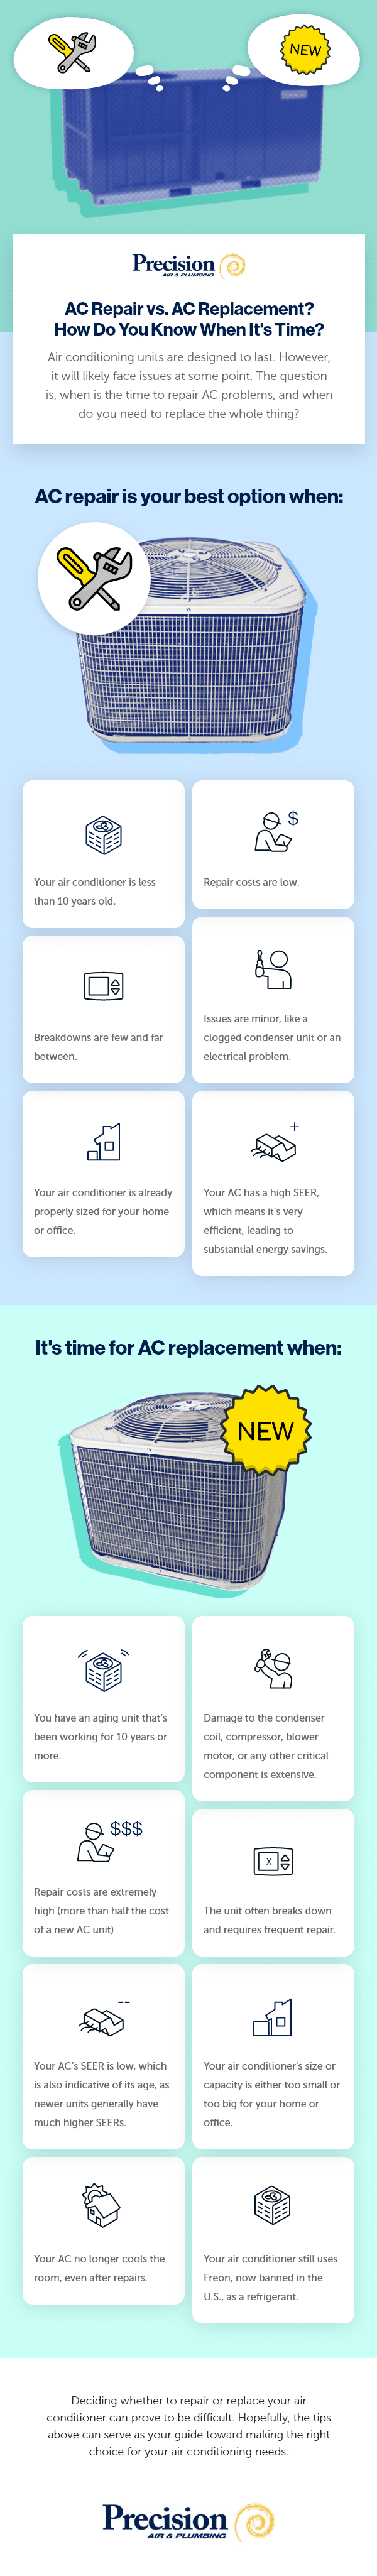 AC repair and replacement